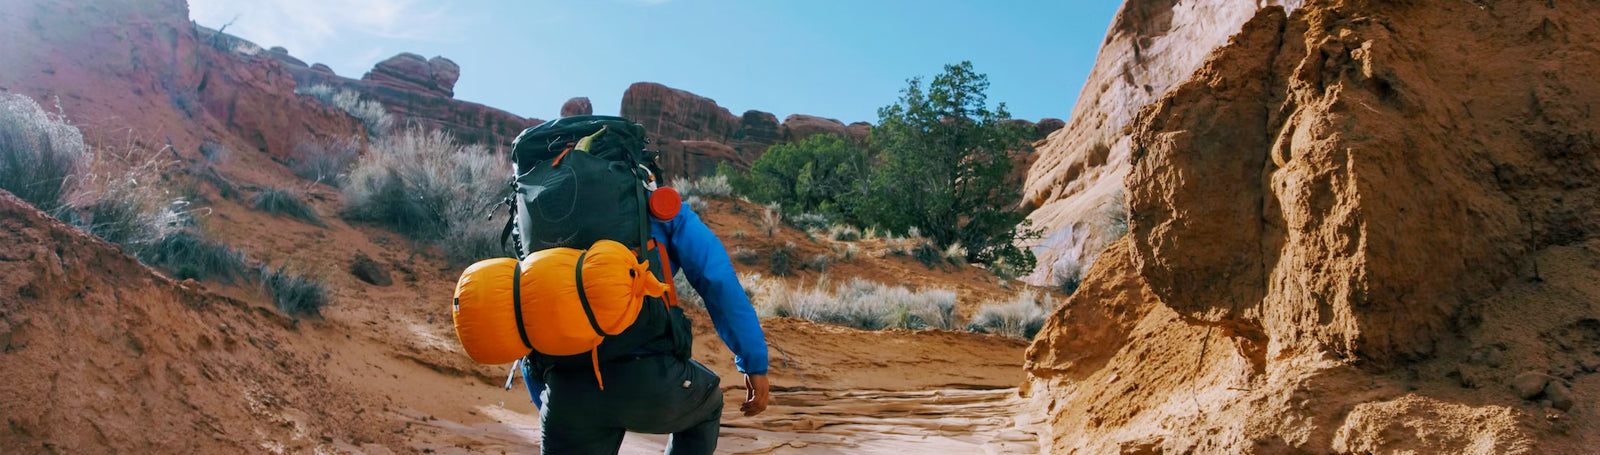 Hiker climbing up rocky trail in a desert